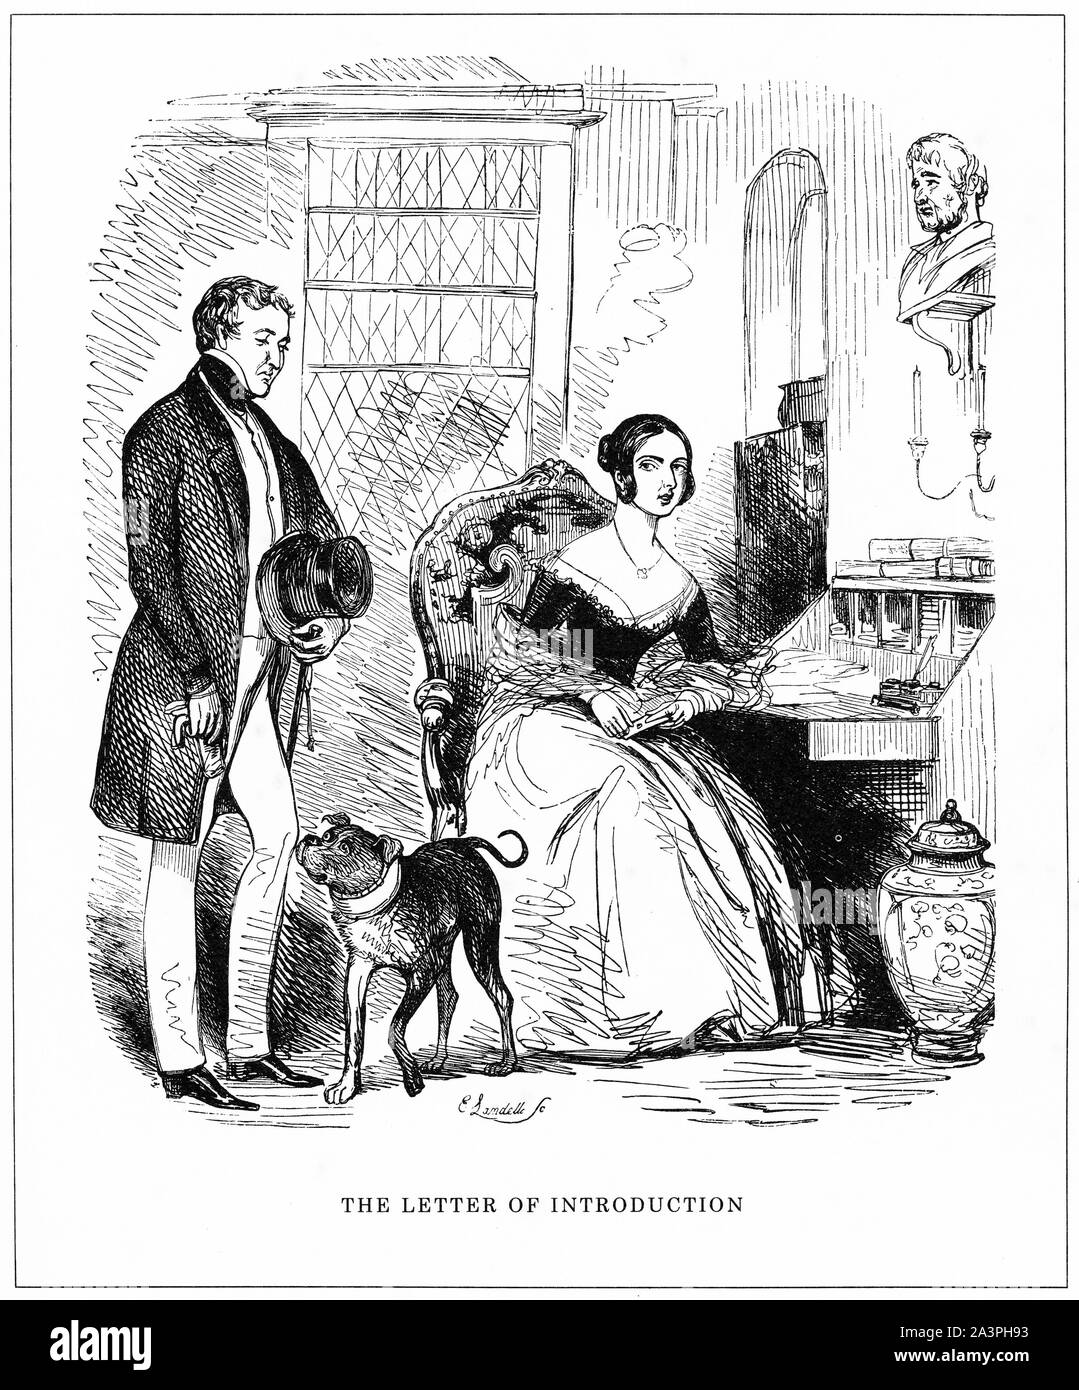 Gravur von Großbritanniens neuer Premierminister Minsiter, Sir Robert Peel, die junge Königin Victoria im Jahre 1841 eingeführt, so dass er seine neue Regierung bilden kann. Von Punch magazine. Stockfoto